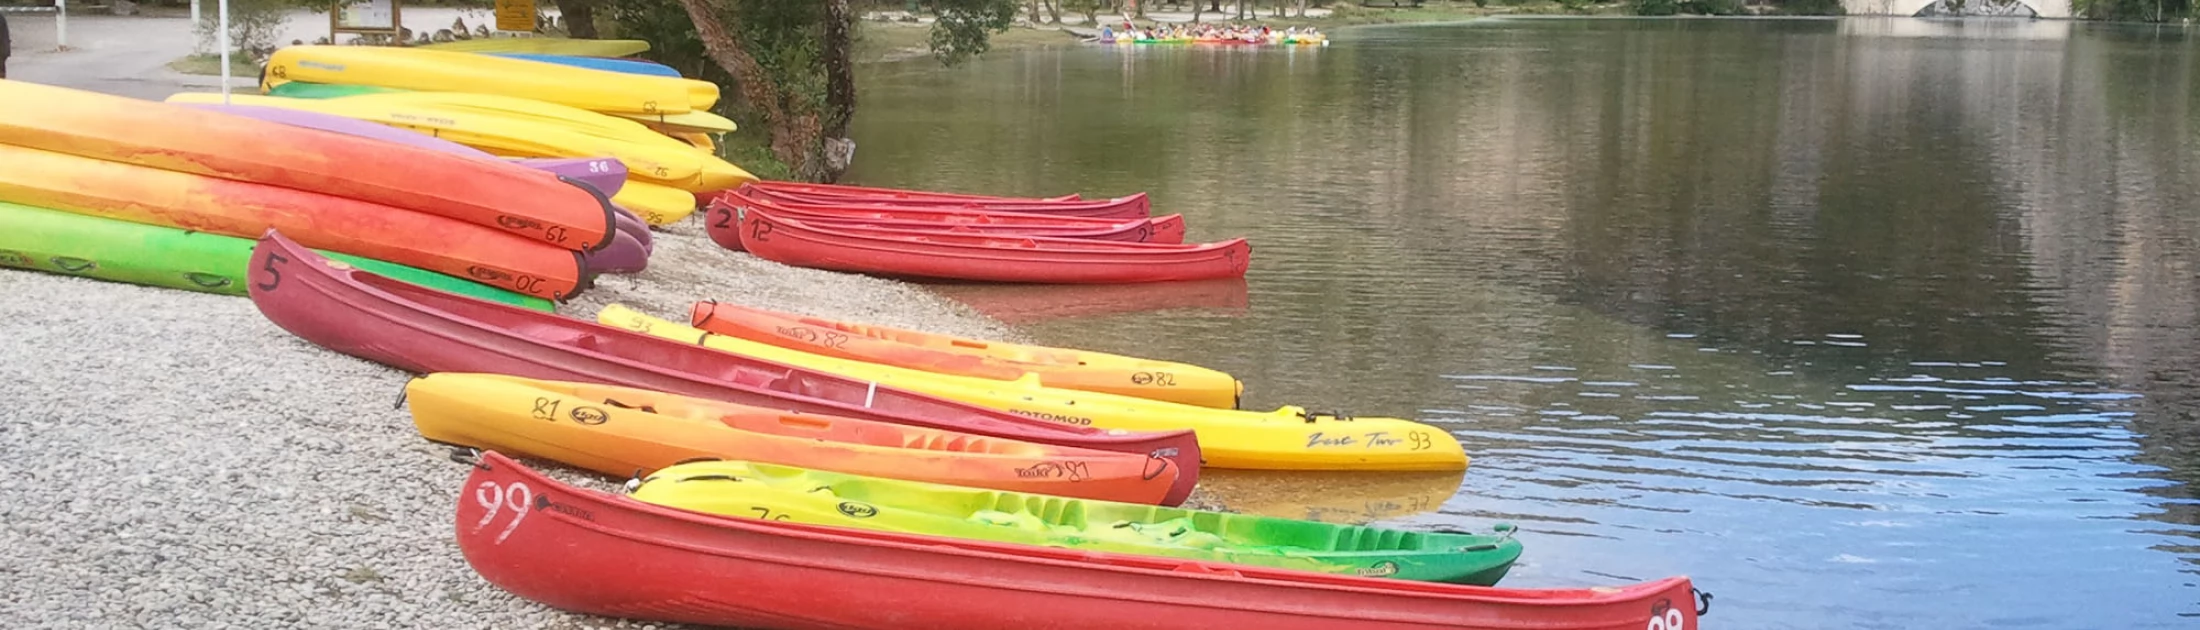 Canoe kayak rental